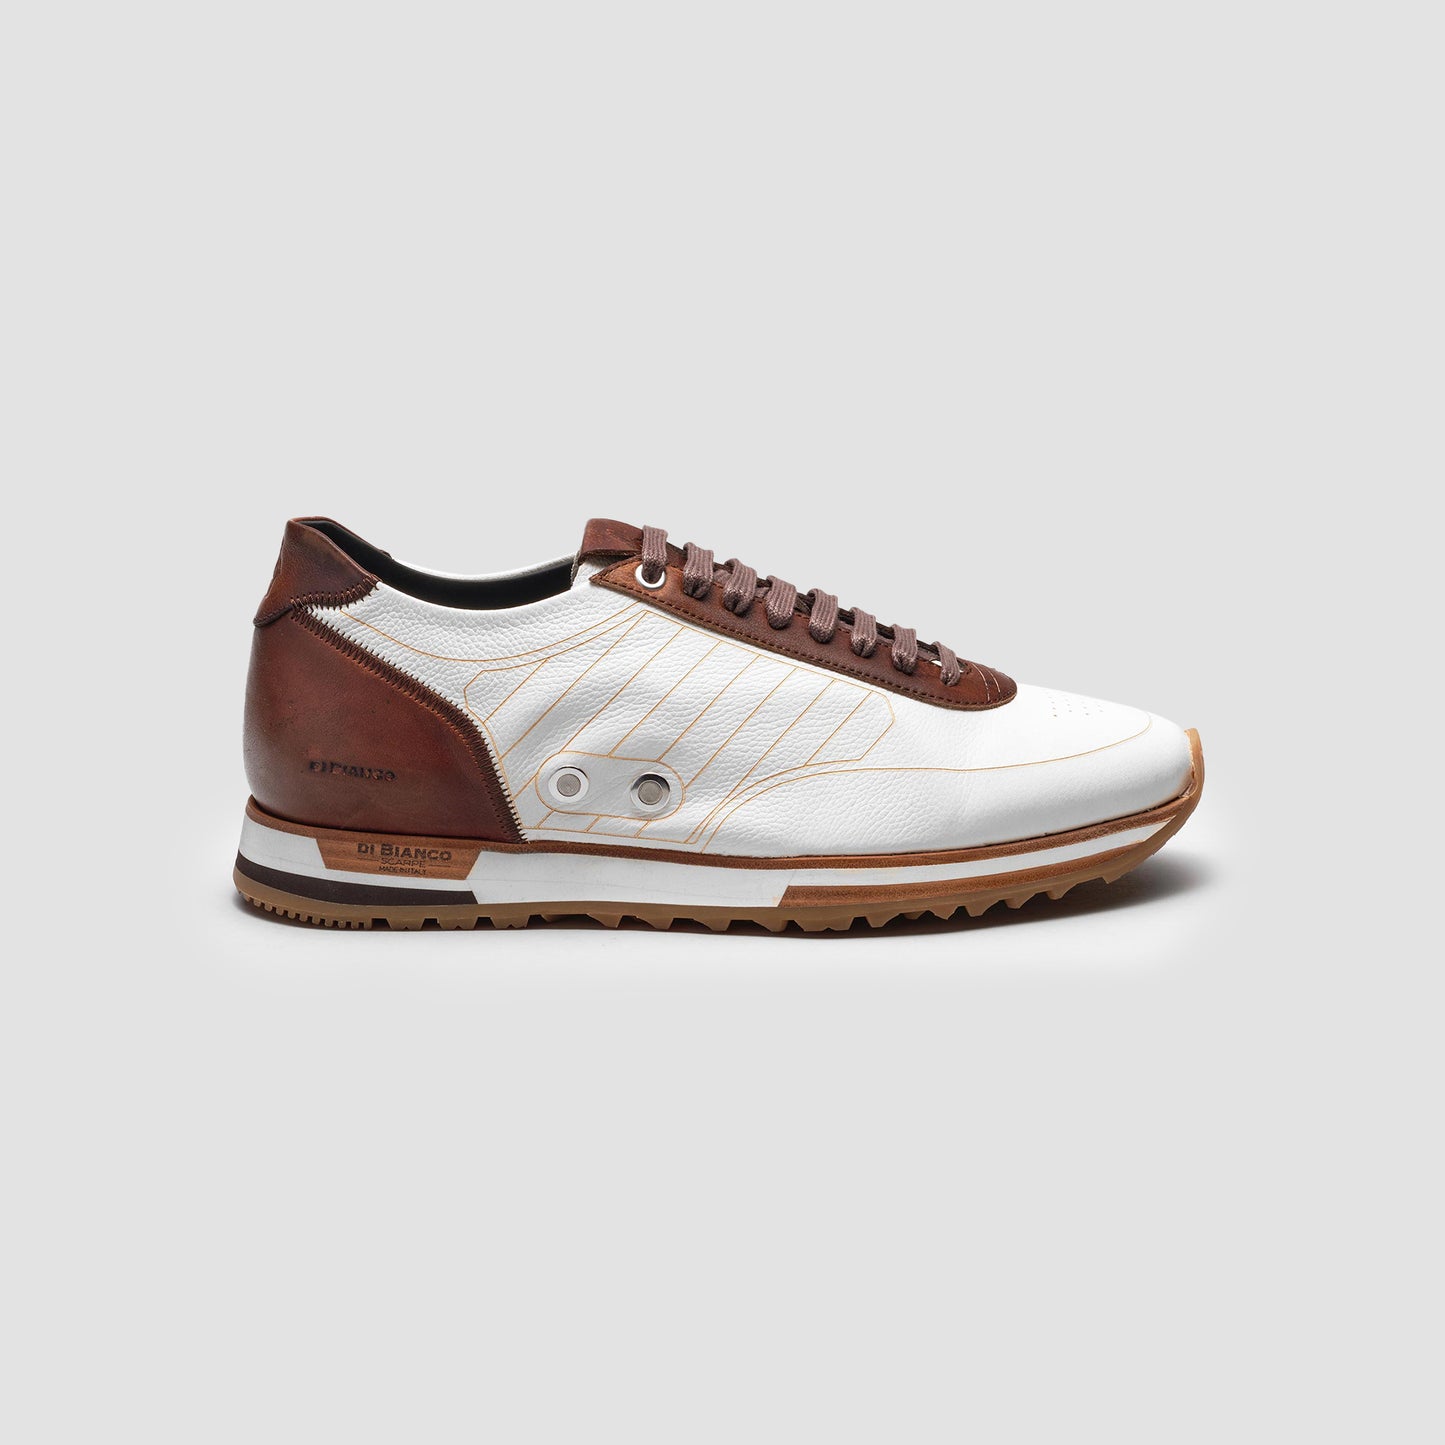 The White | Designer Sneaker | Italian Men's Shoes – Scarpe di